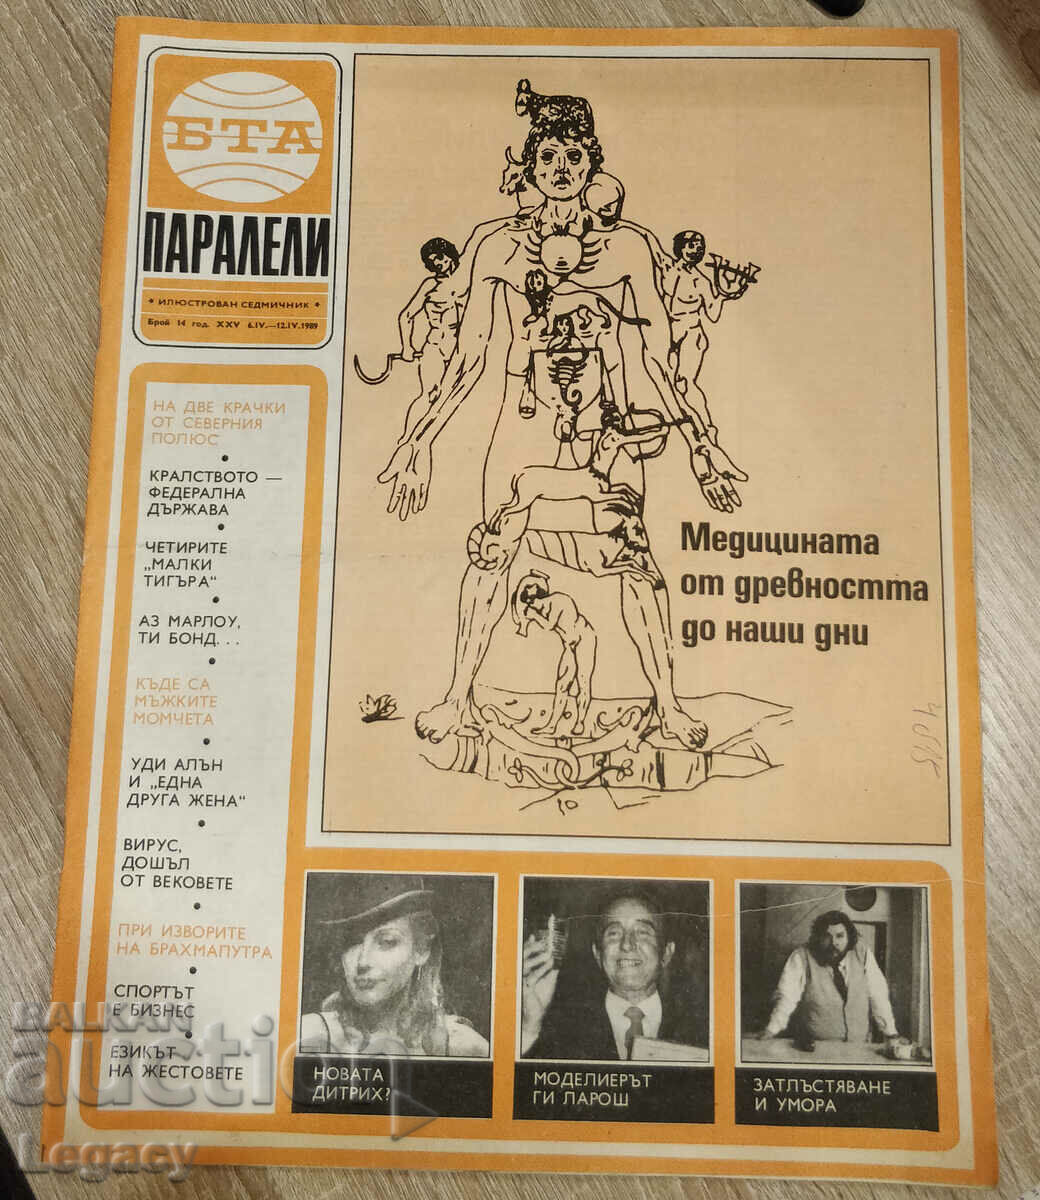 1989 BTA Parallels magazine, issue 14